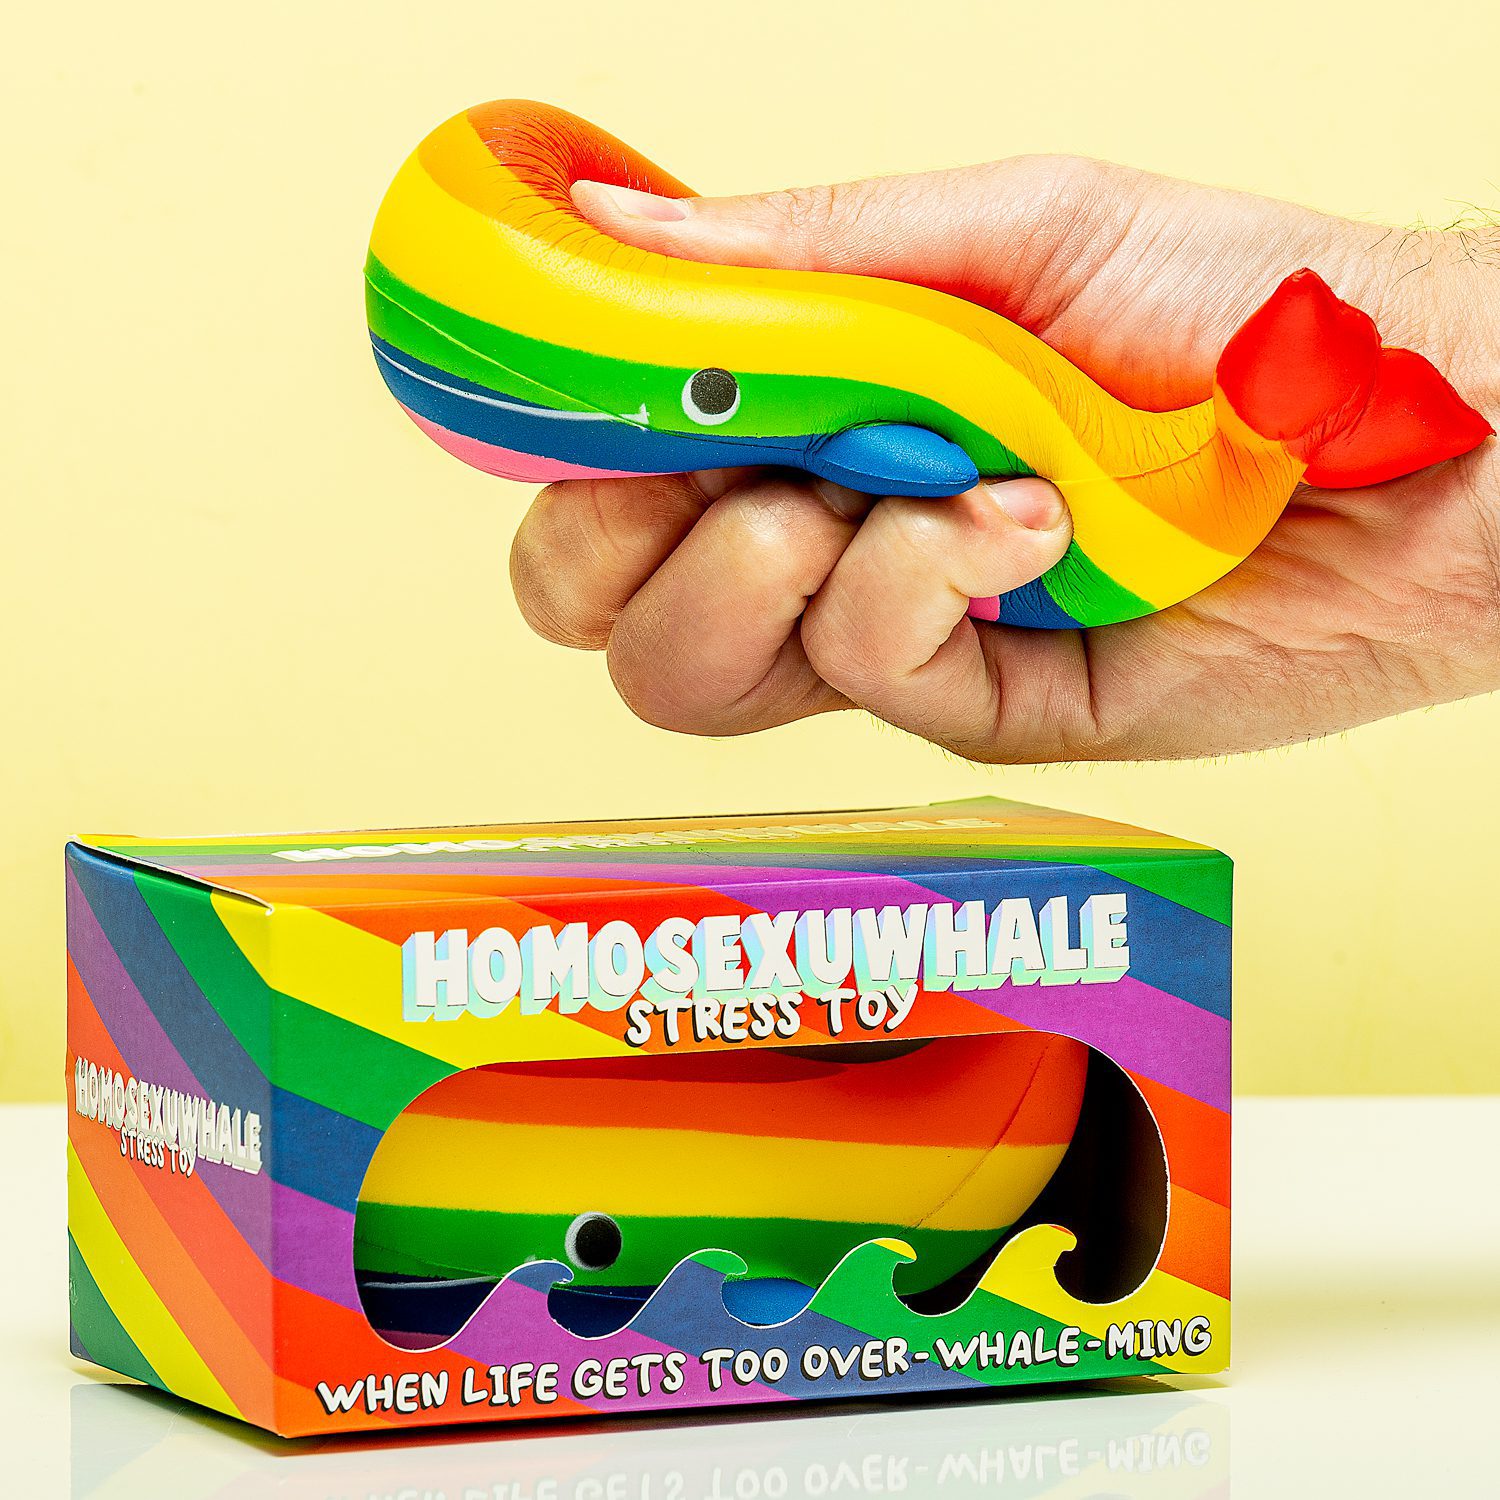 Homosexu-whale Stressbal